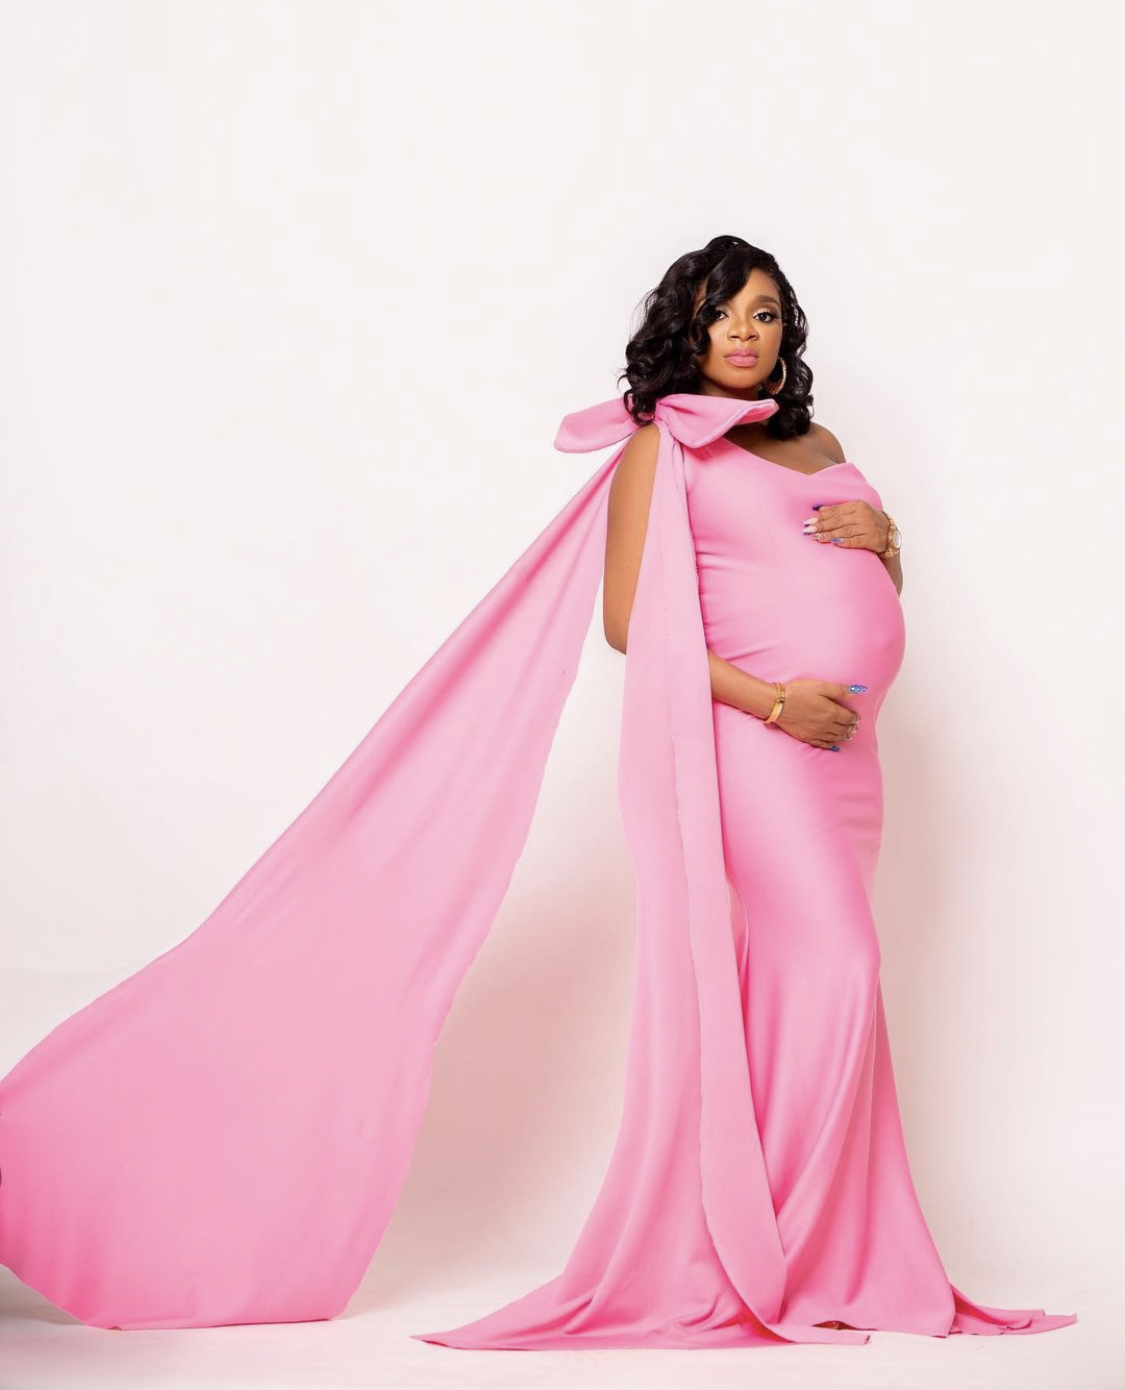 BBNaija Queen Announces Pregnancy [photos]